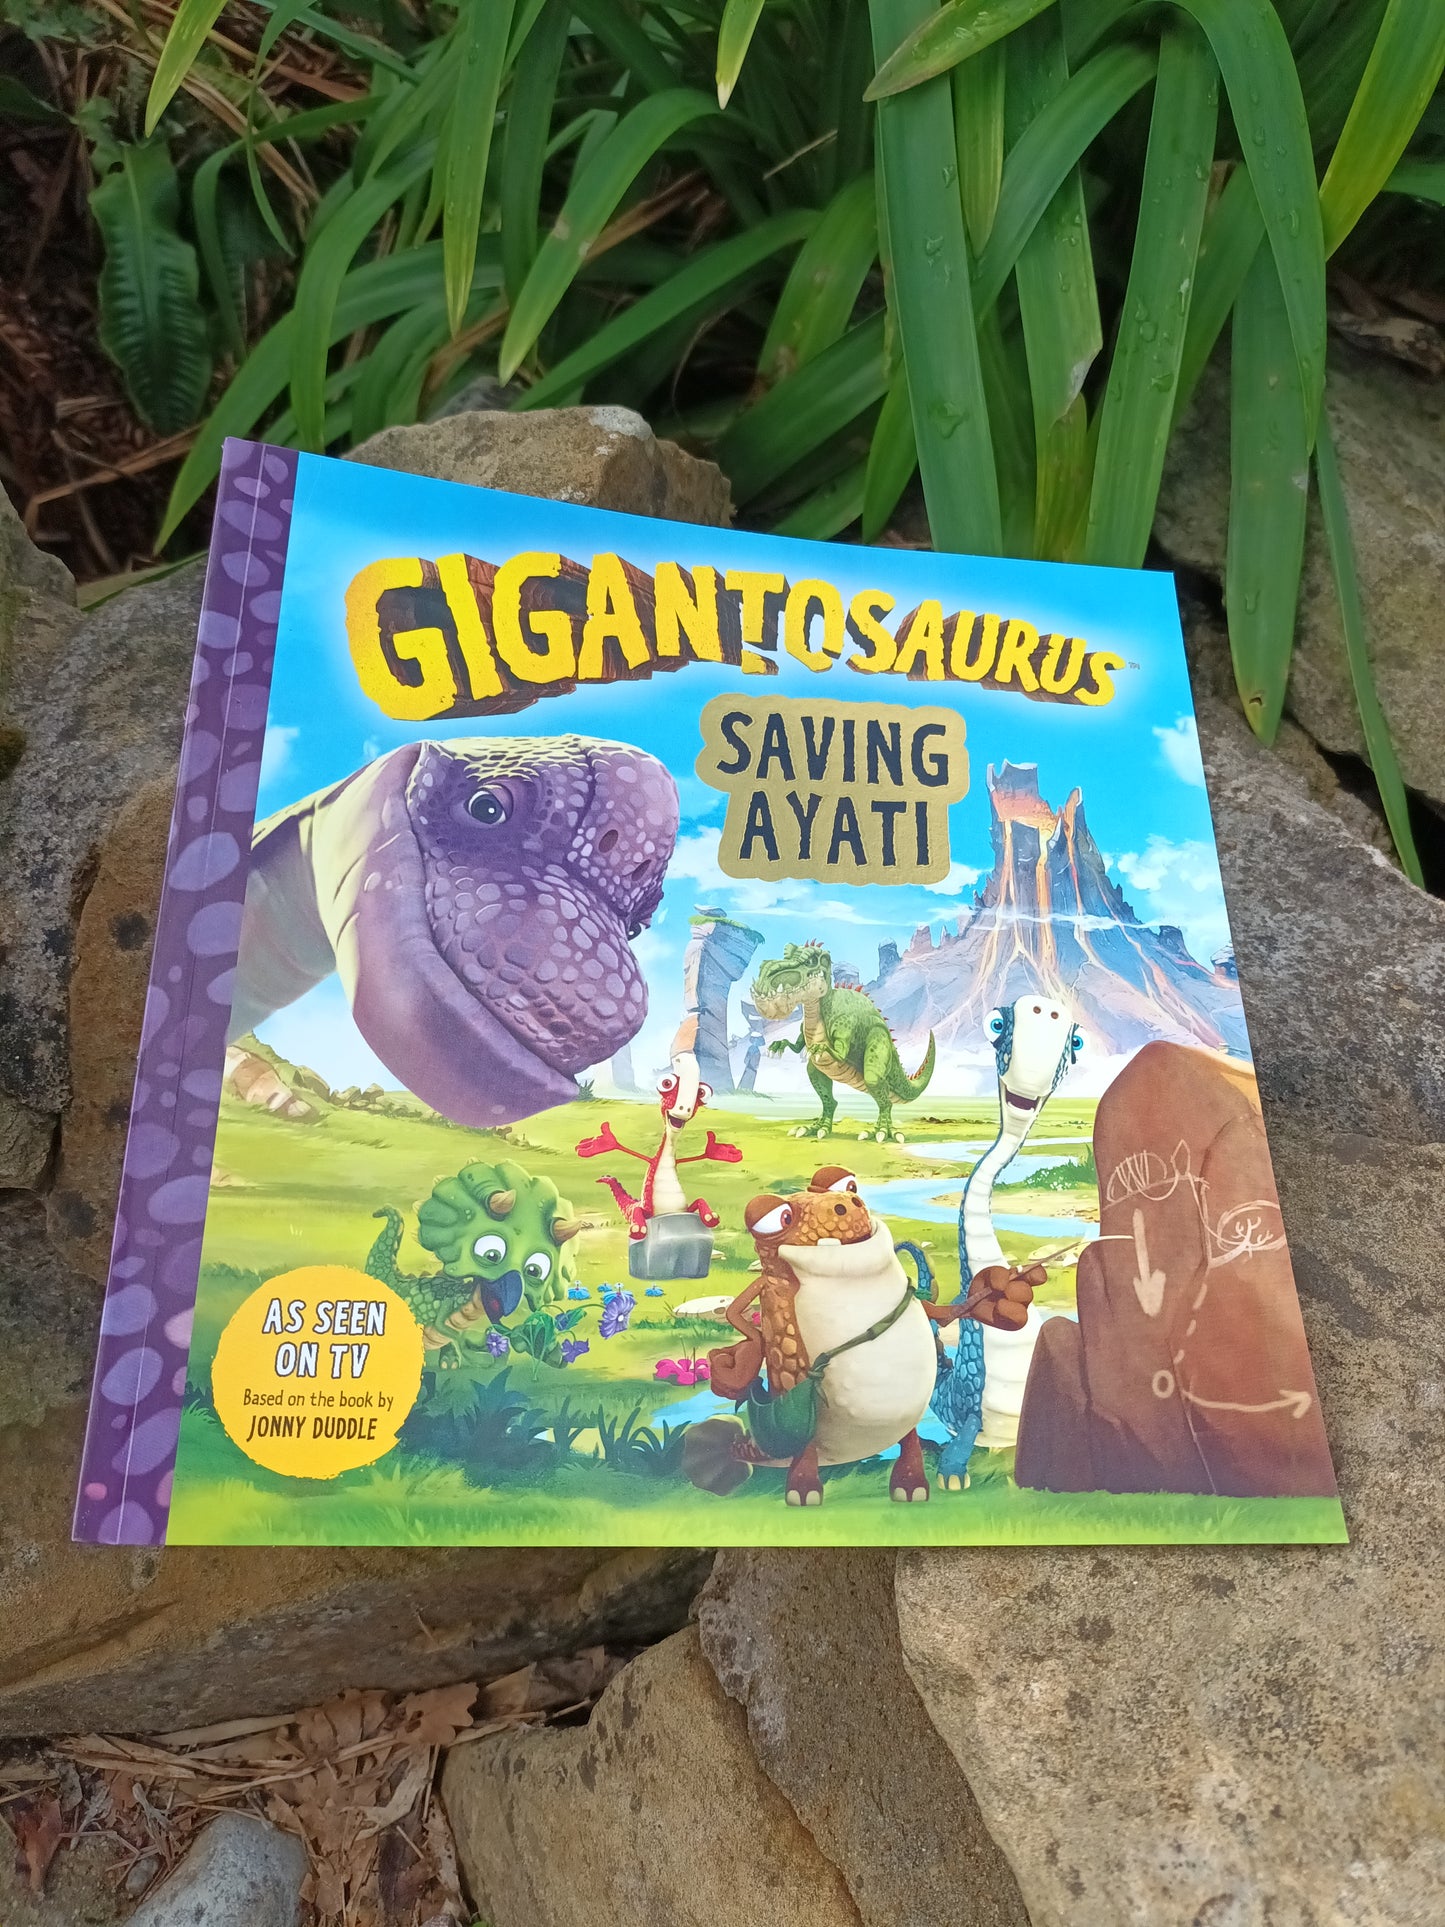 Gigantosaurus - Saving Ayati